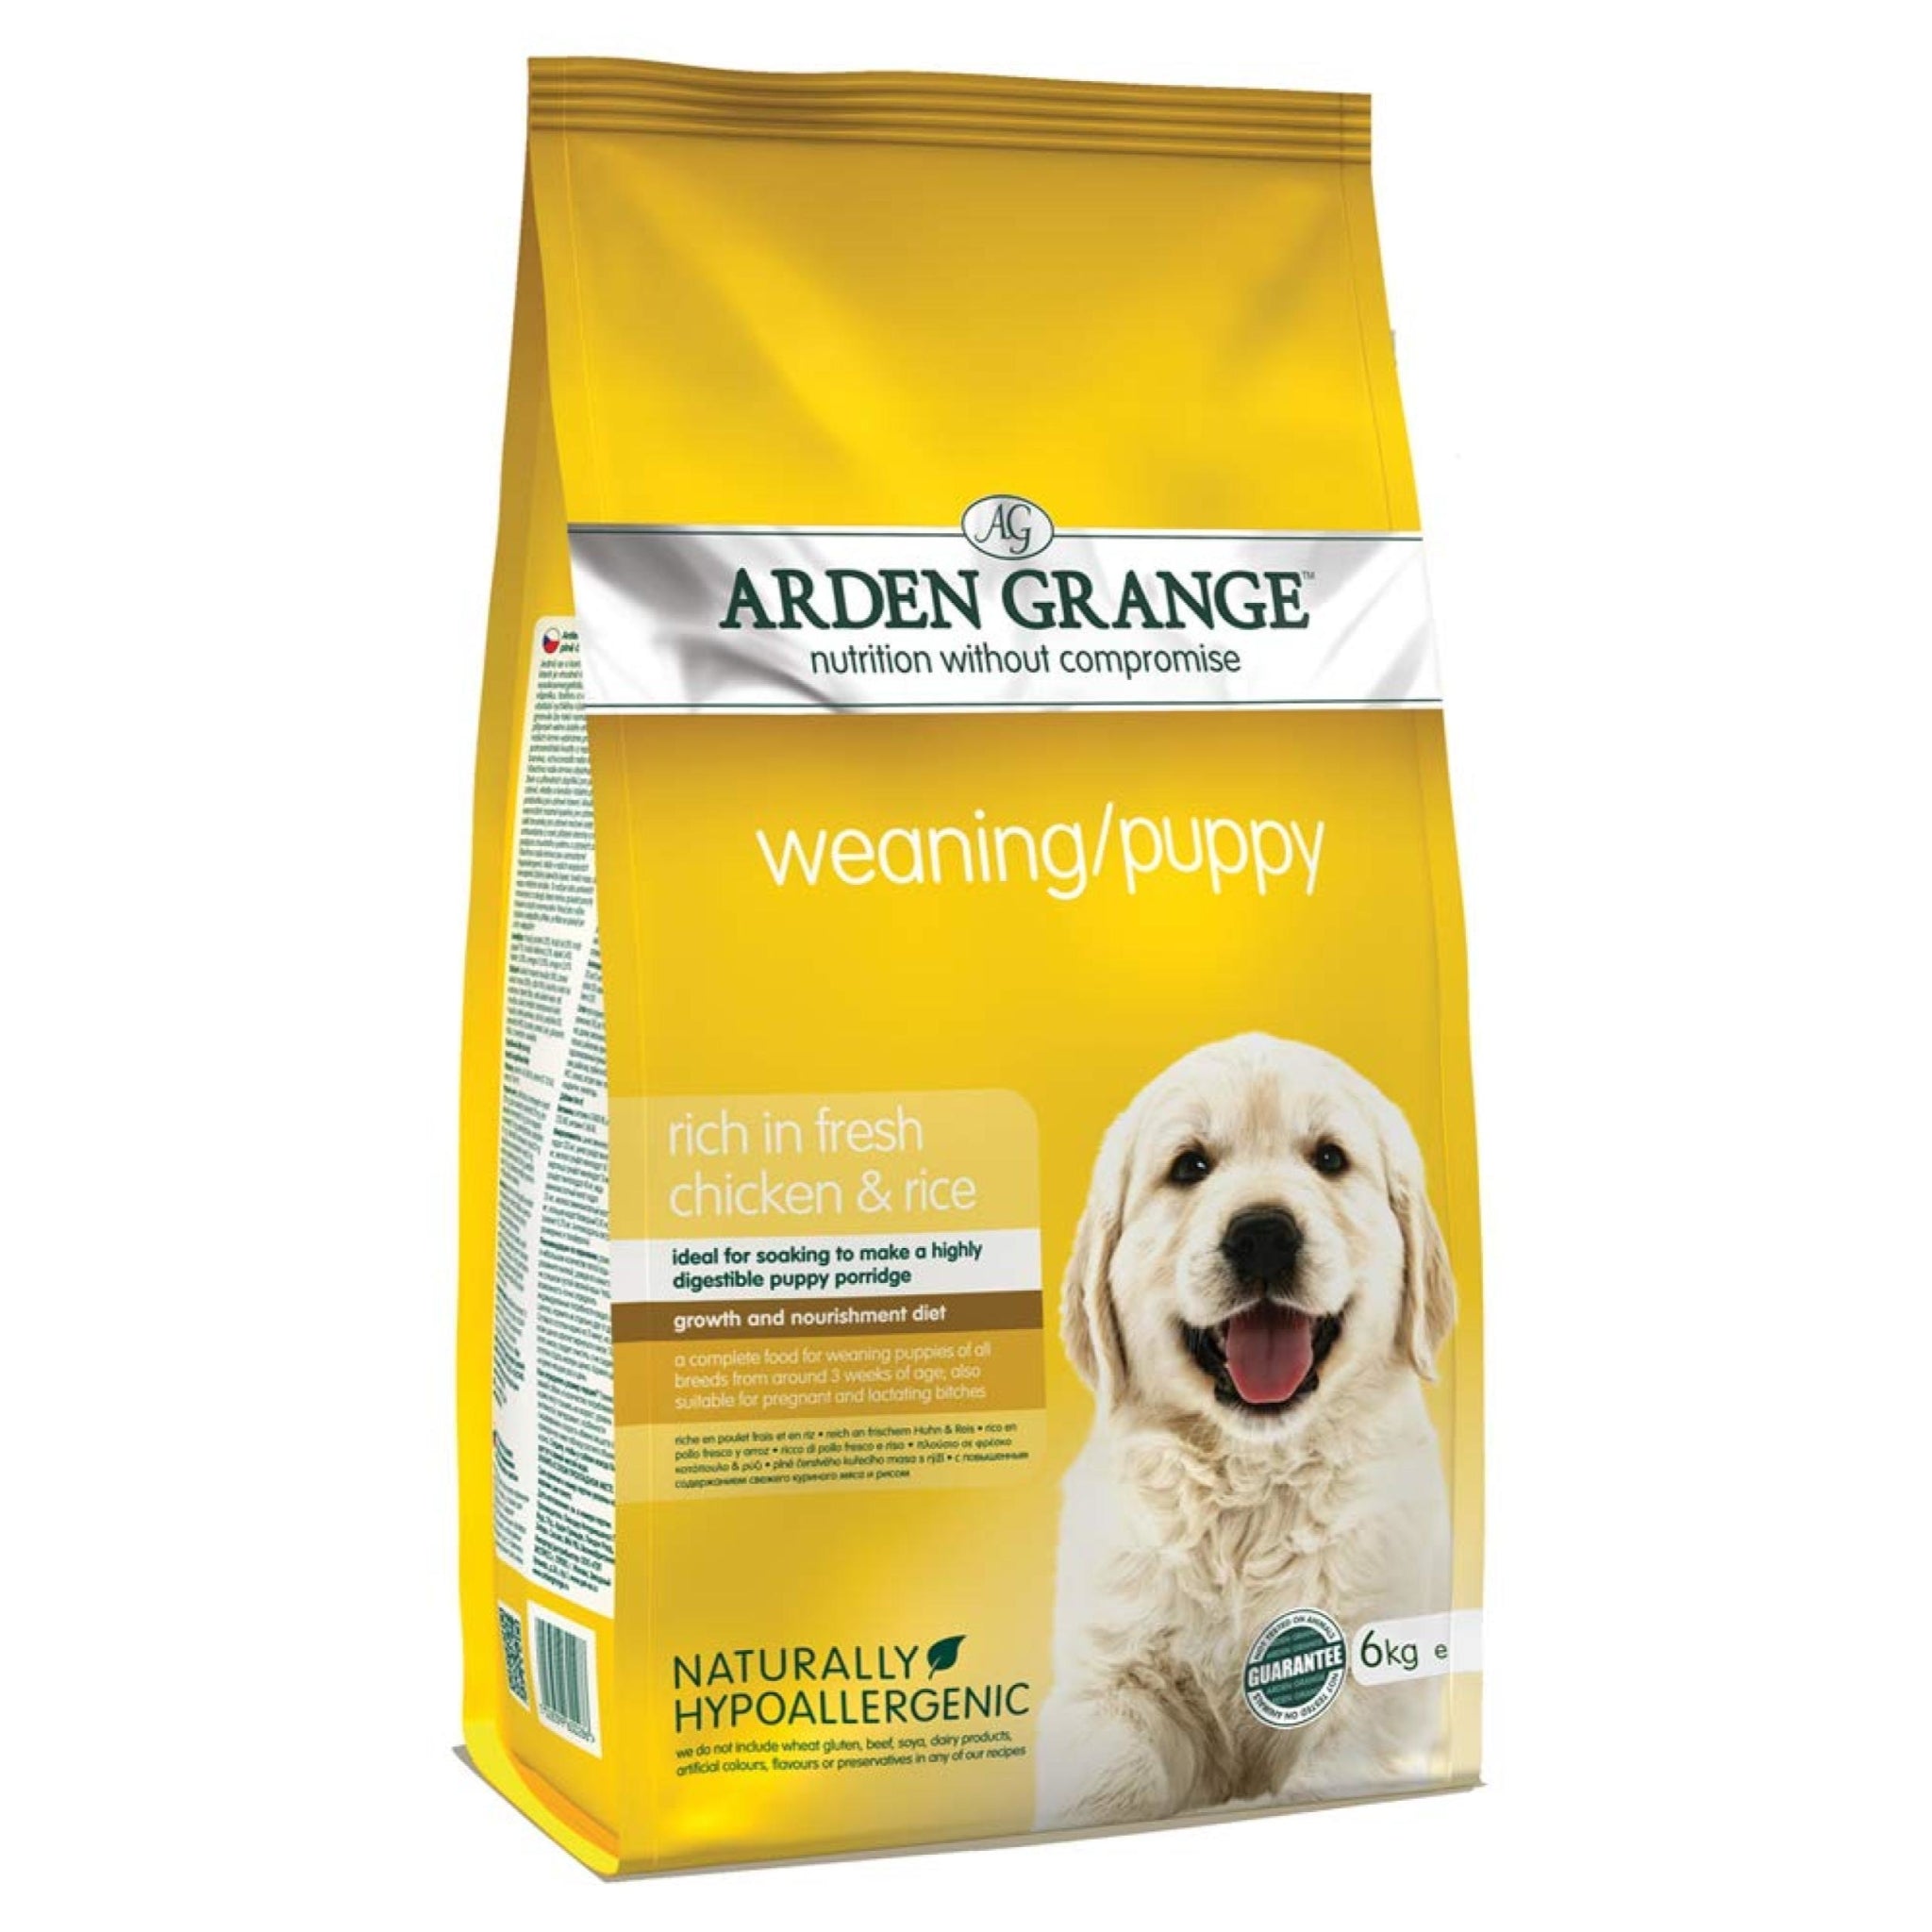 Arden Grange Weaning/Puppy Fresh Chicken and Rice Dog Food